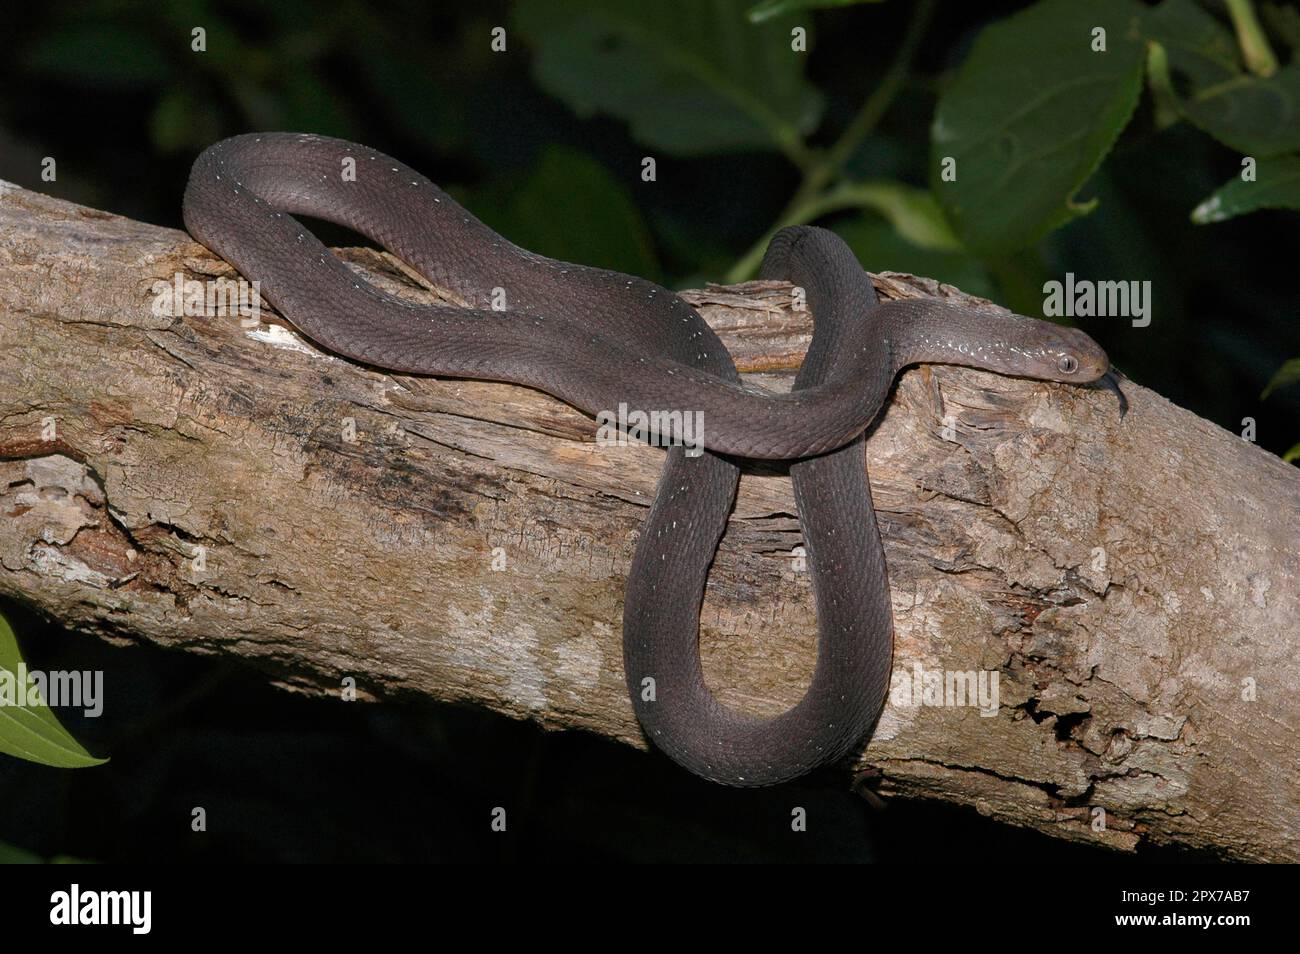 East African Egg Snake Stock Photo